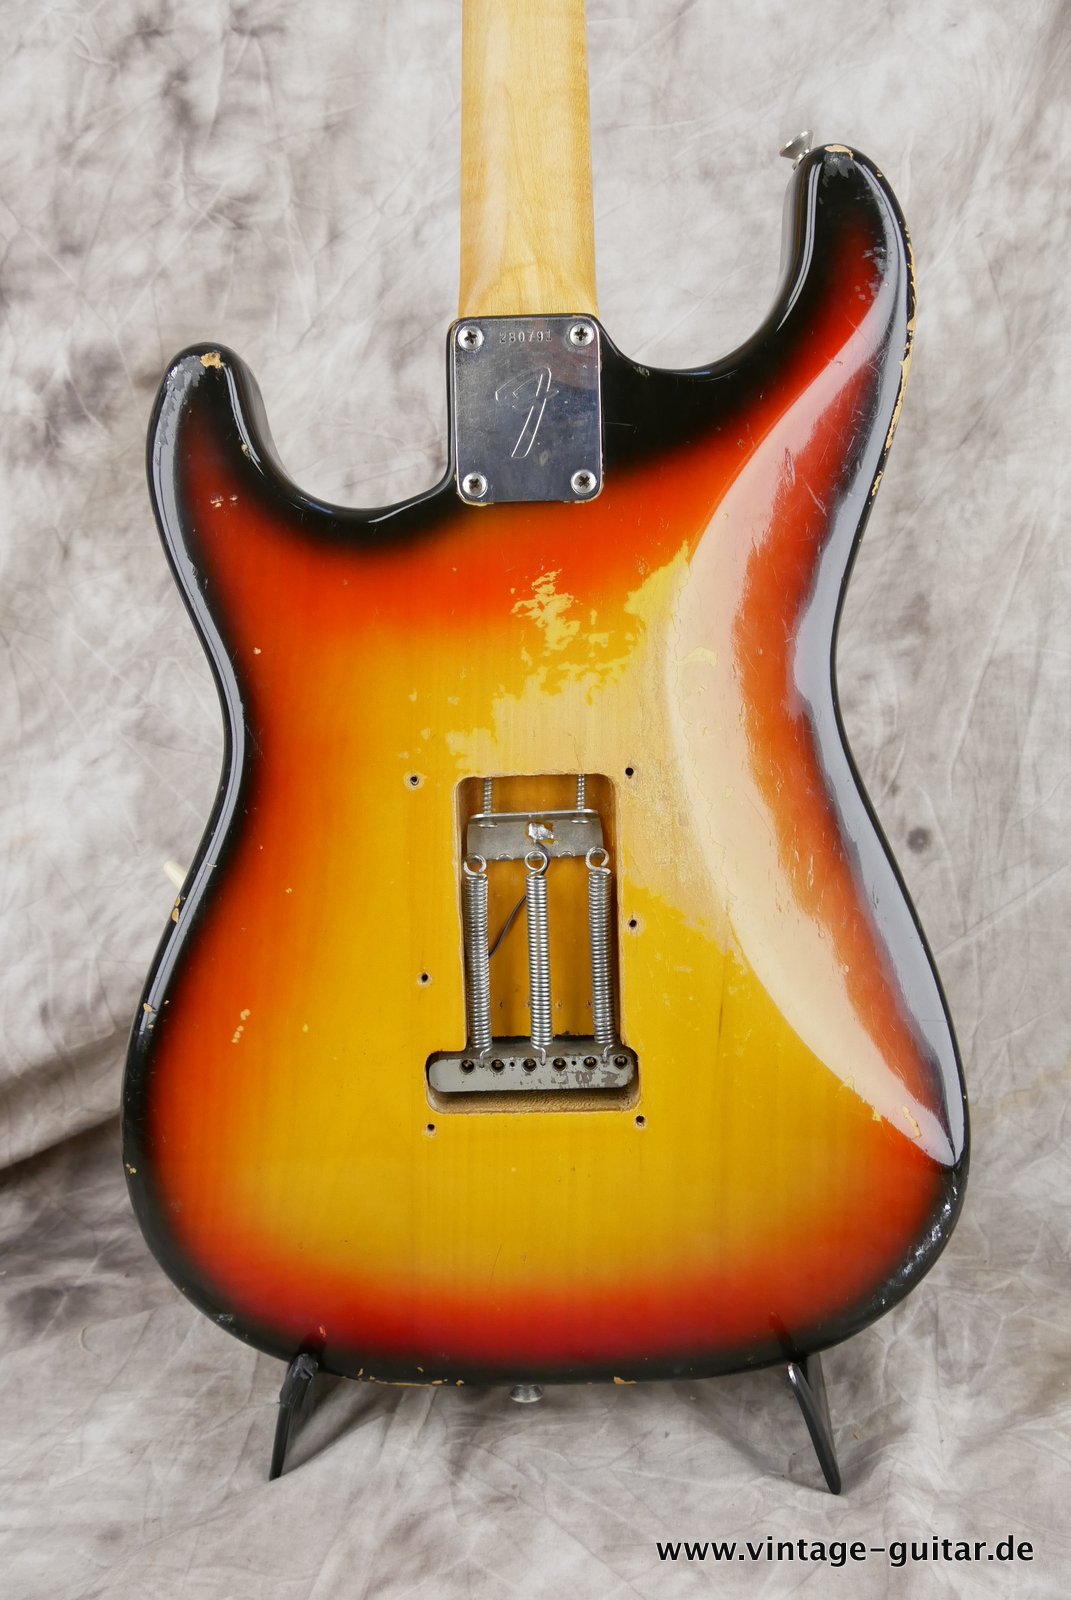 Fender-Stratocaster-1972-sunburst-4-hole-004.JPG